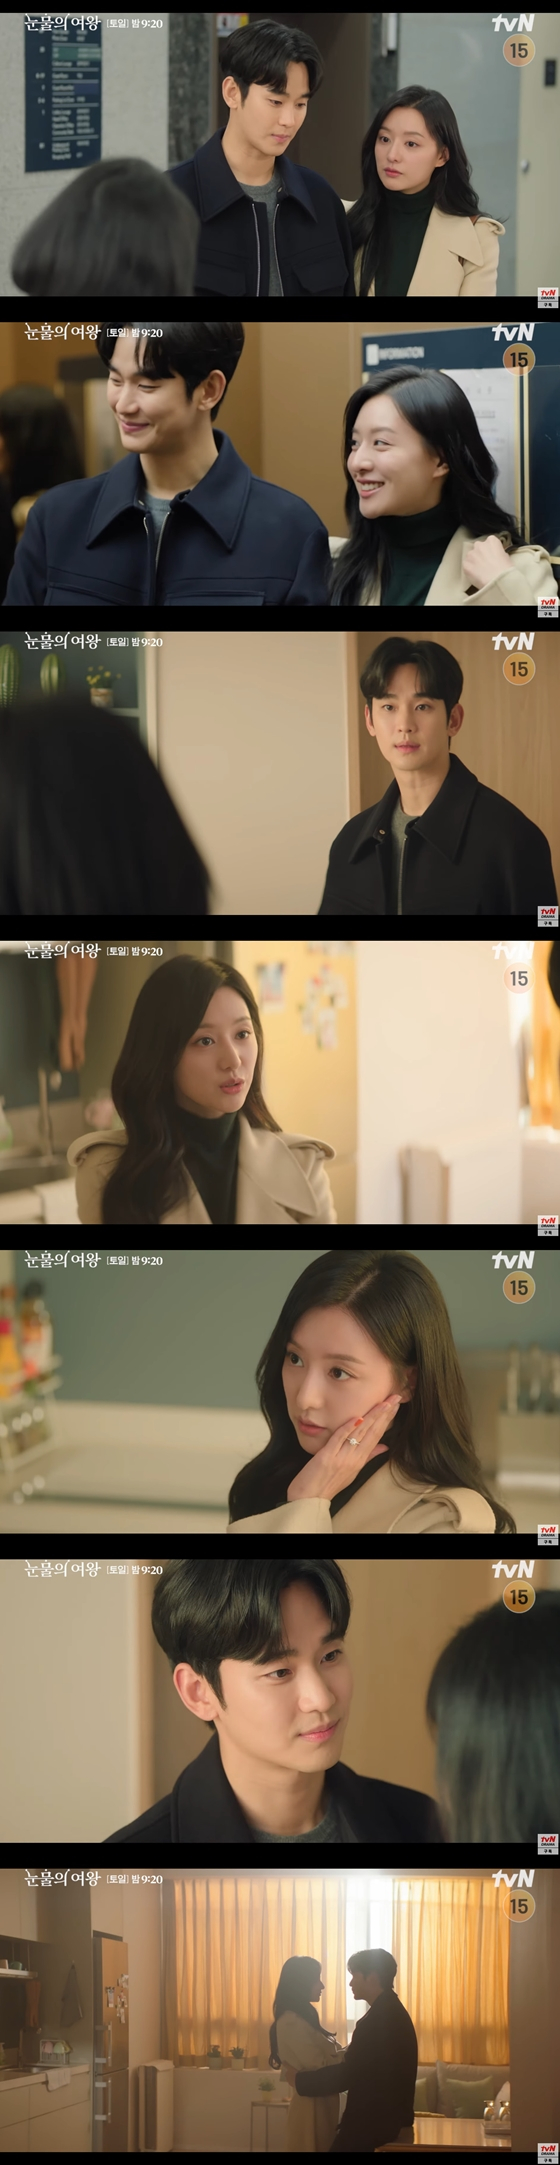 tvN 토일드라마 '눈물의 여왕'의 스페셜 선공개 영상./사진=유튜브 채널 'tvN drama' 영상 캡처